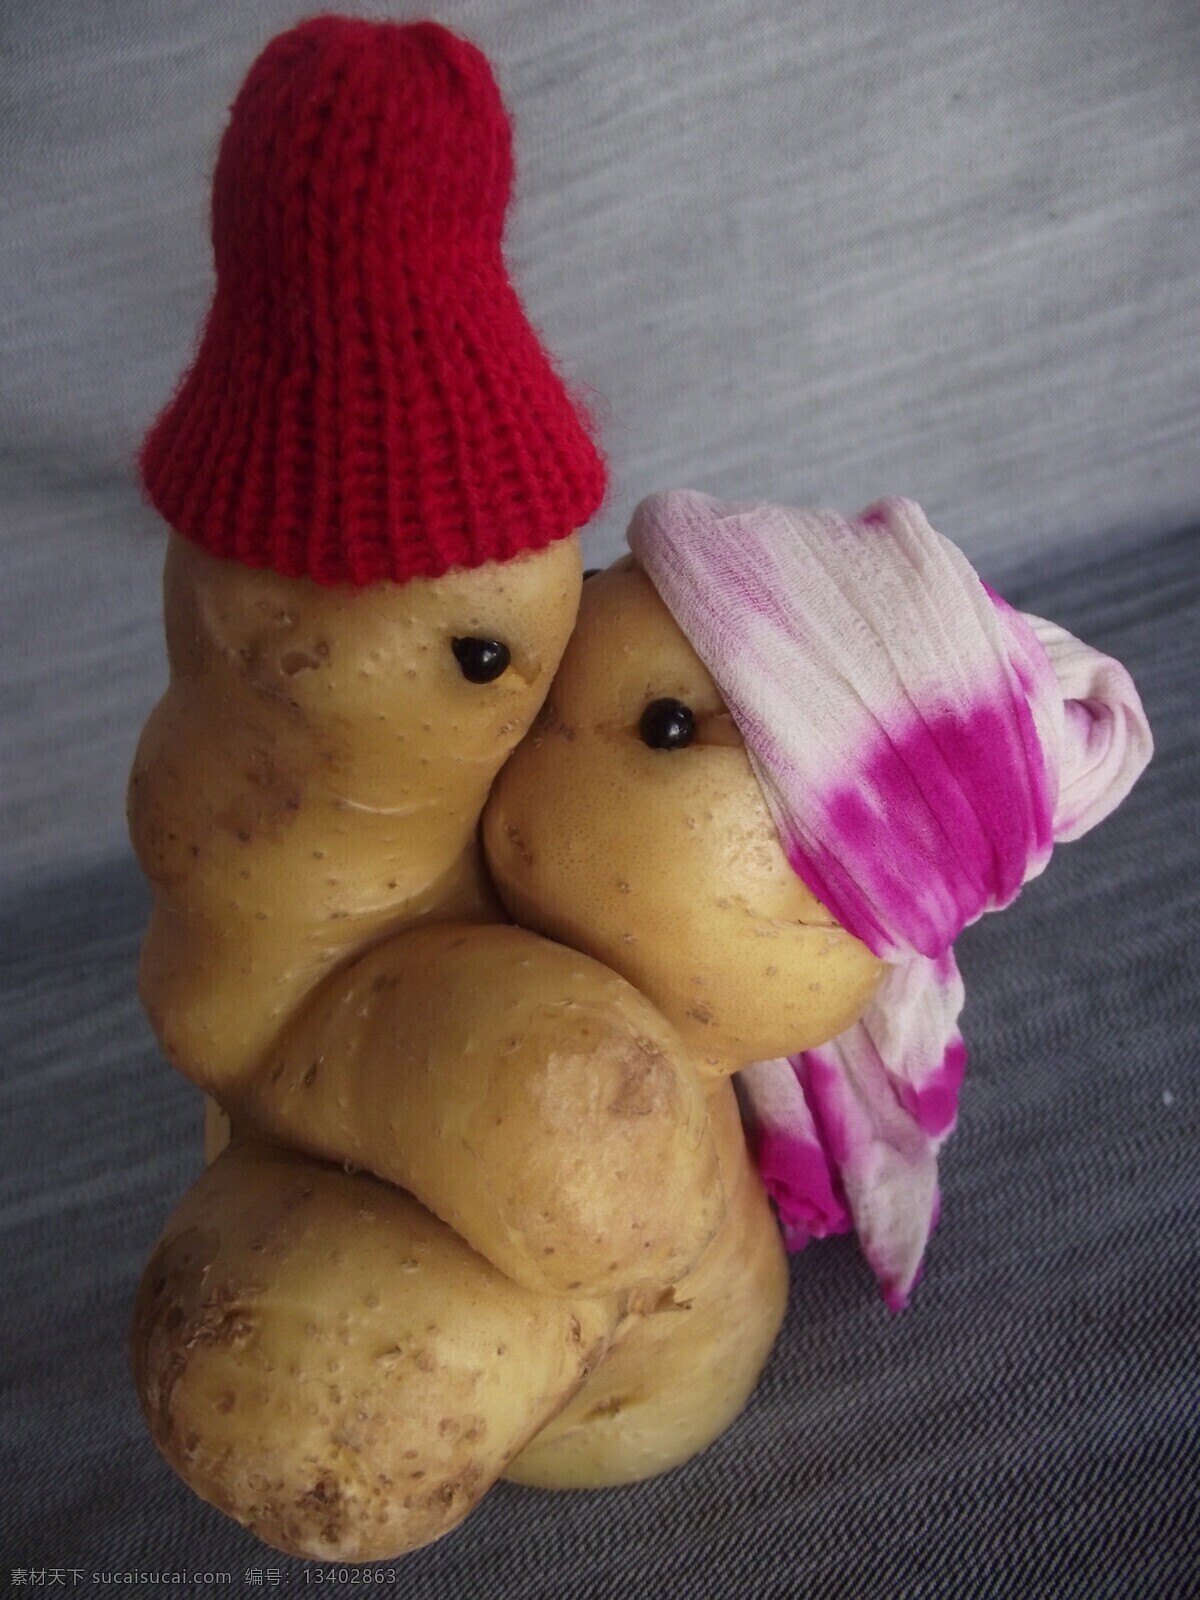 逗乐图片 设计图 生物世界 食品 蔬菜 土豆 艺术 创意 搞笑图片 创意搞笑图片 土豆情人 土豆幽默 娱乐 psd源文件